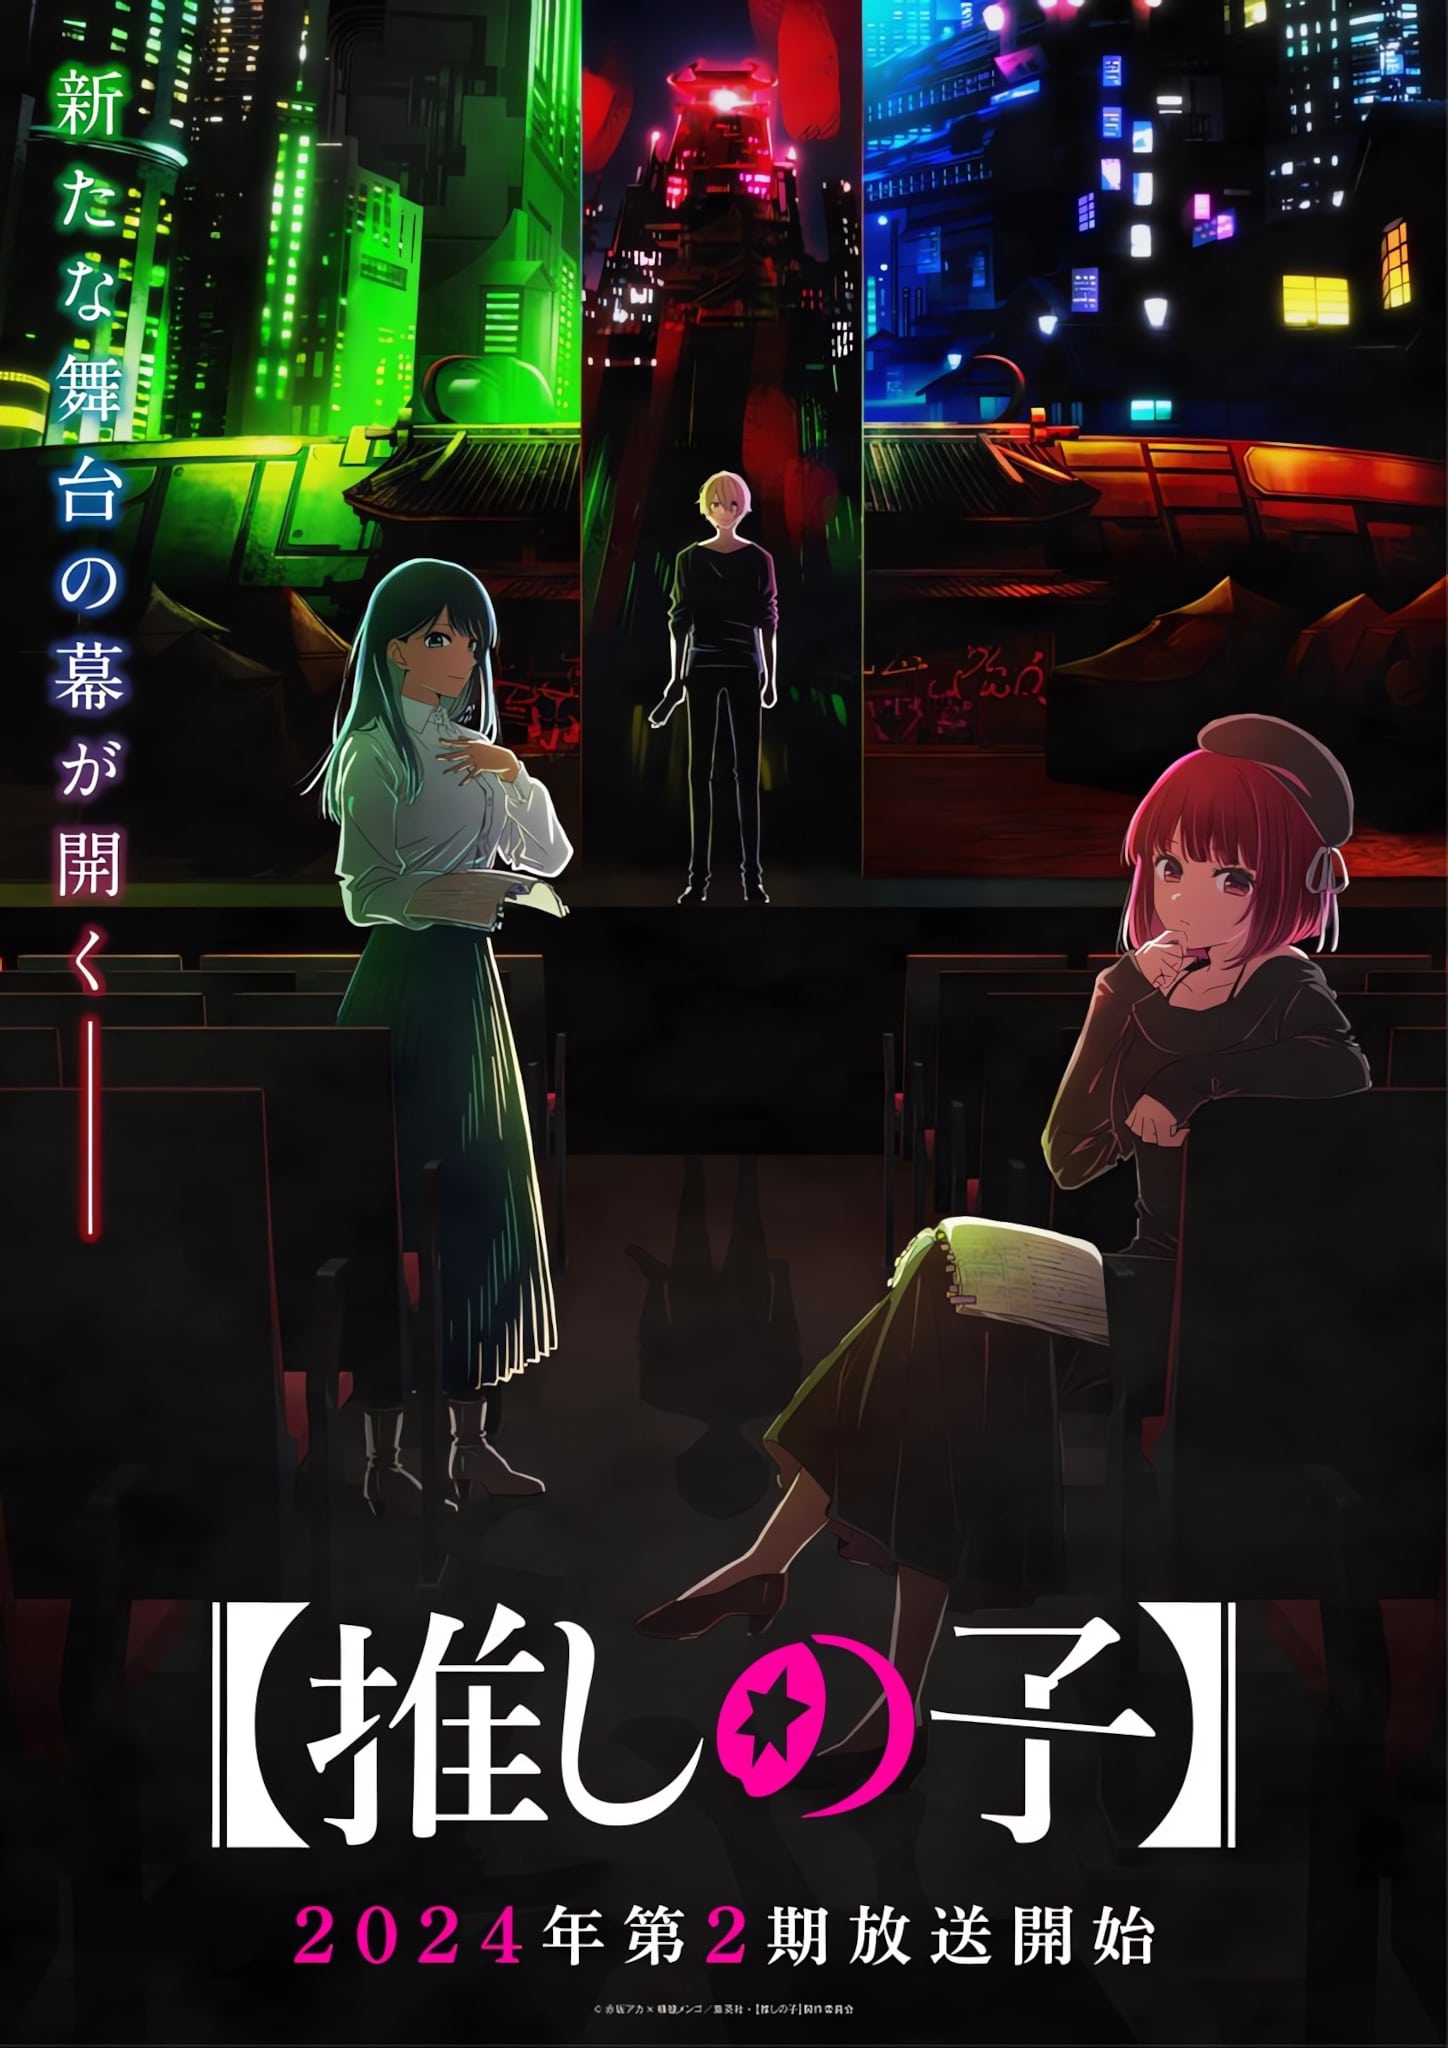 Visuel centré sur la pièce de théâtre Tokyo Blade pour la saison 2 de l'anime Oshi no Ko